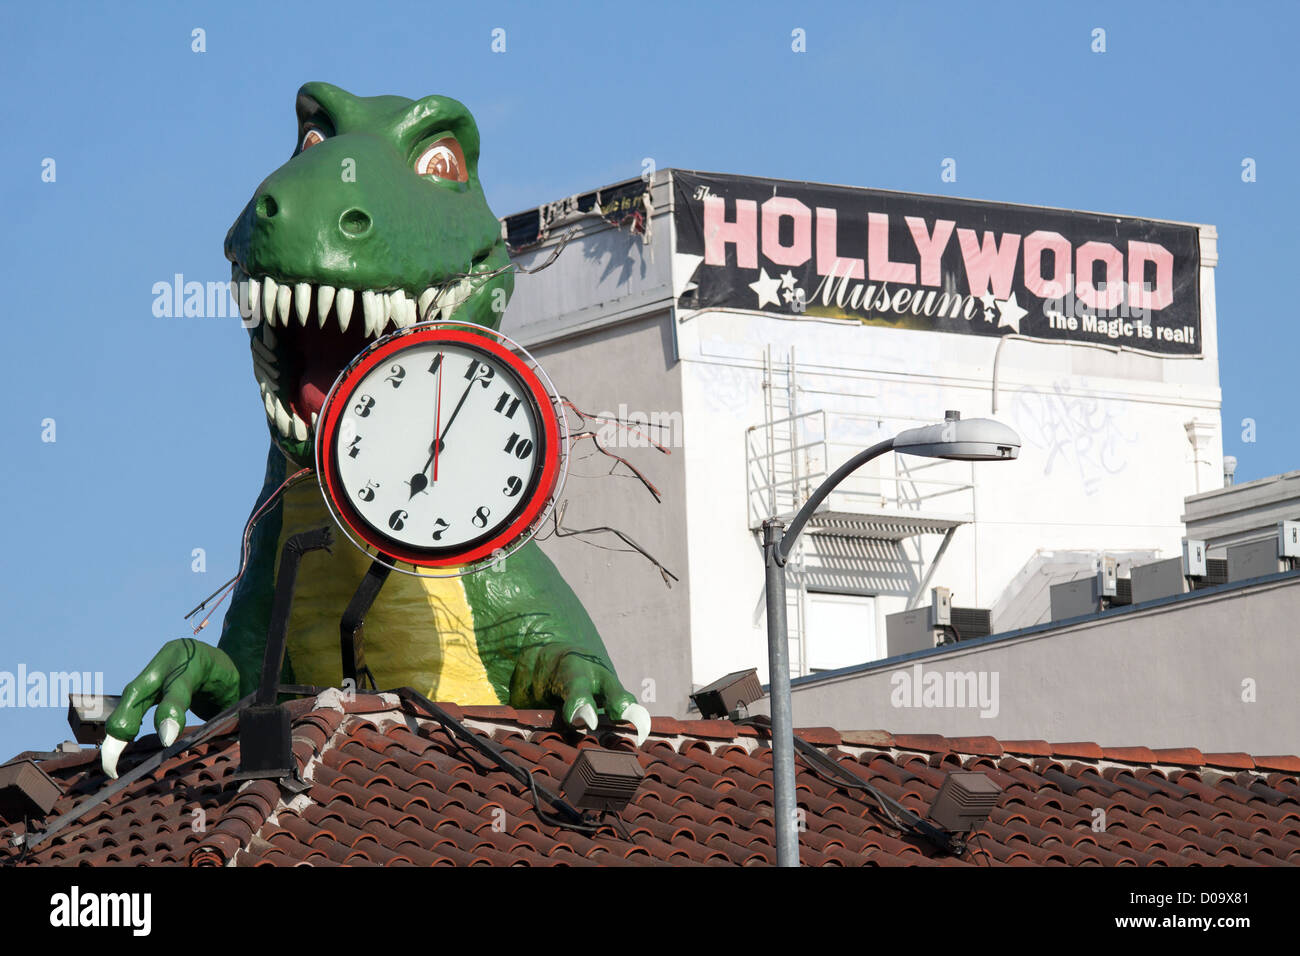 Dinosaure Tyrannosaurus rex EN PLASTIQUE SUR LE TOIT, Ripley's Believe It Or Not MUSEUM À HOLLYWOOD LOS ANGELES CALIFORNIA UNITED STATES Banque D'Images